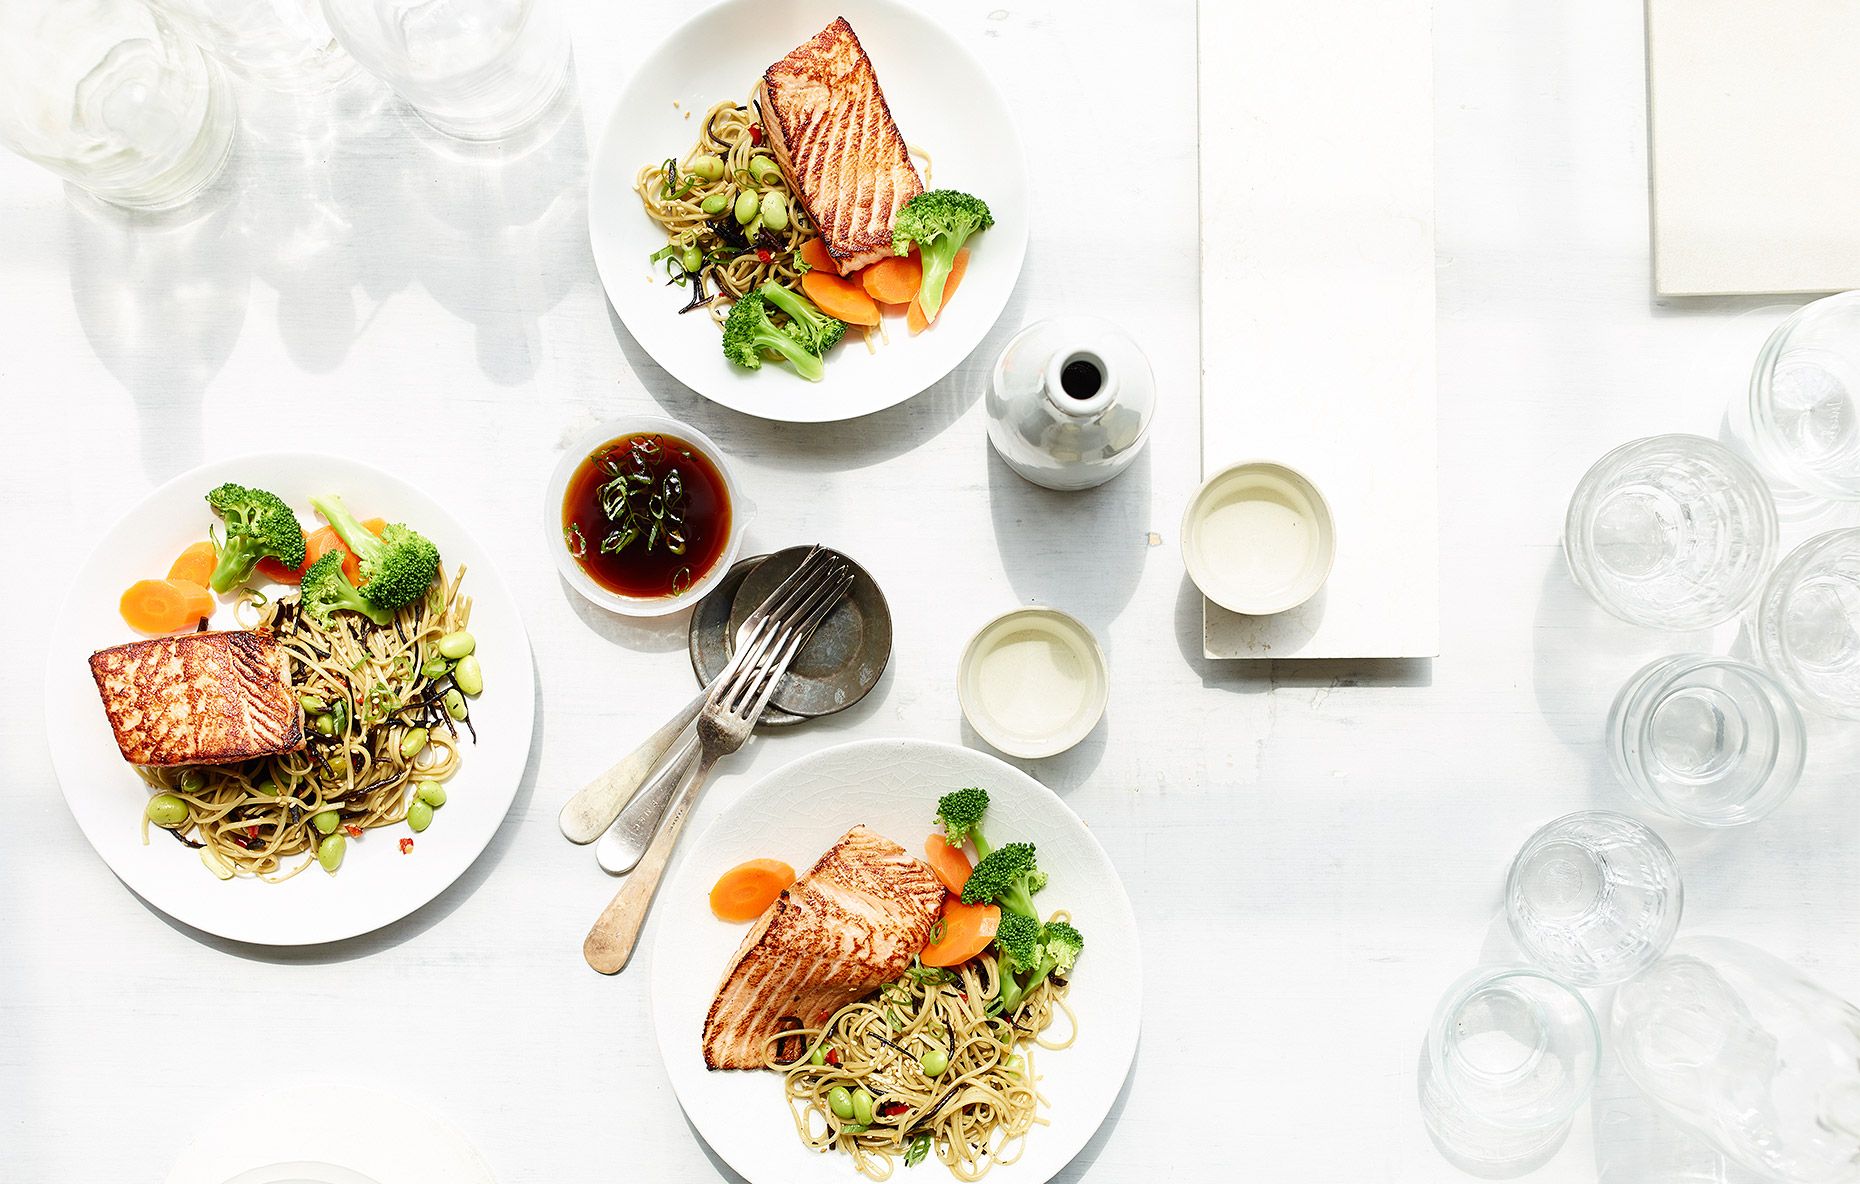 Tròn House cung cấp cho bạn 10 tips chụp ảnh món ăn trông ngon mắt và hấp dẫn nhất bao gồm cả lựa chọn background. Với những hình ảnh xinh đẹp và chi tiết, chắc chắn bạn sẽ có những bức ảnh món ăn đẹp nhất.